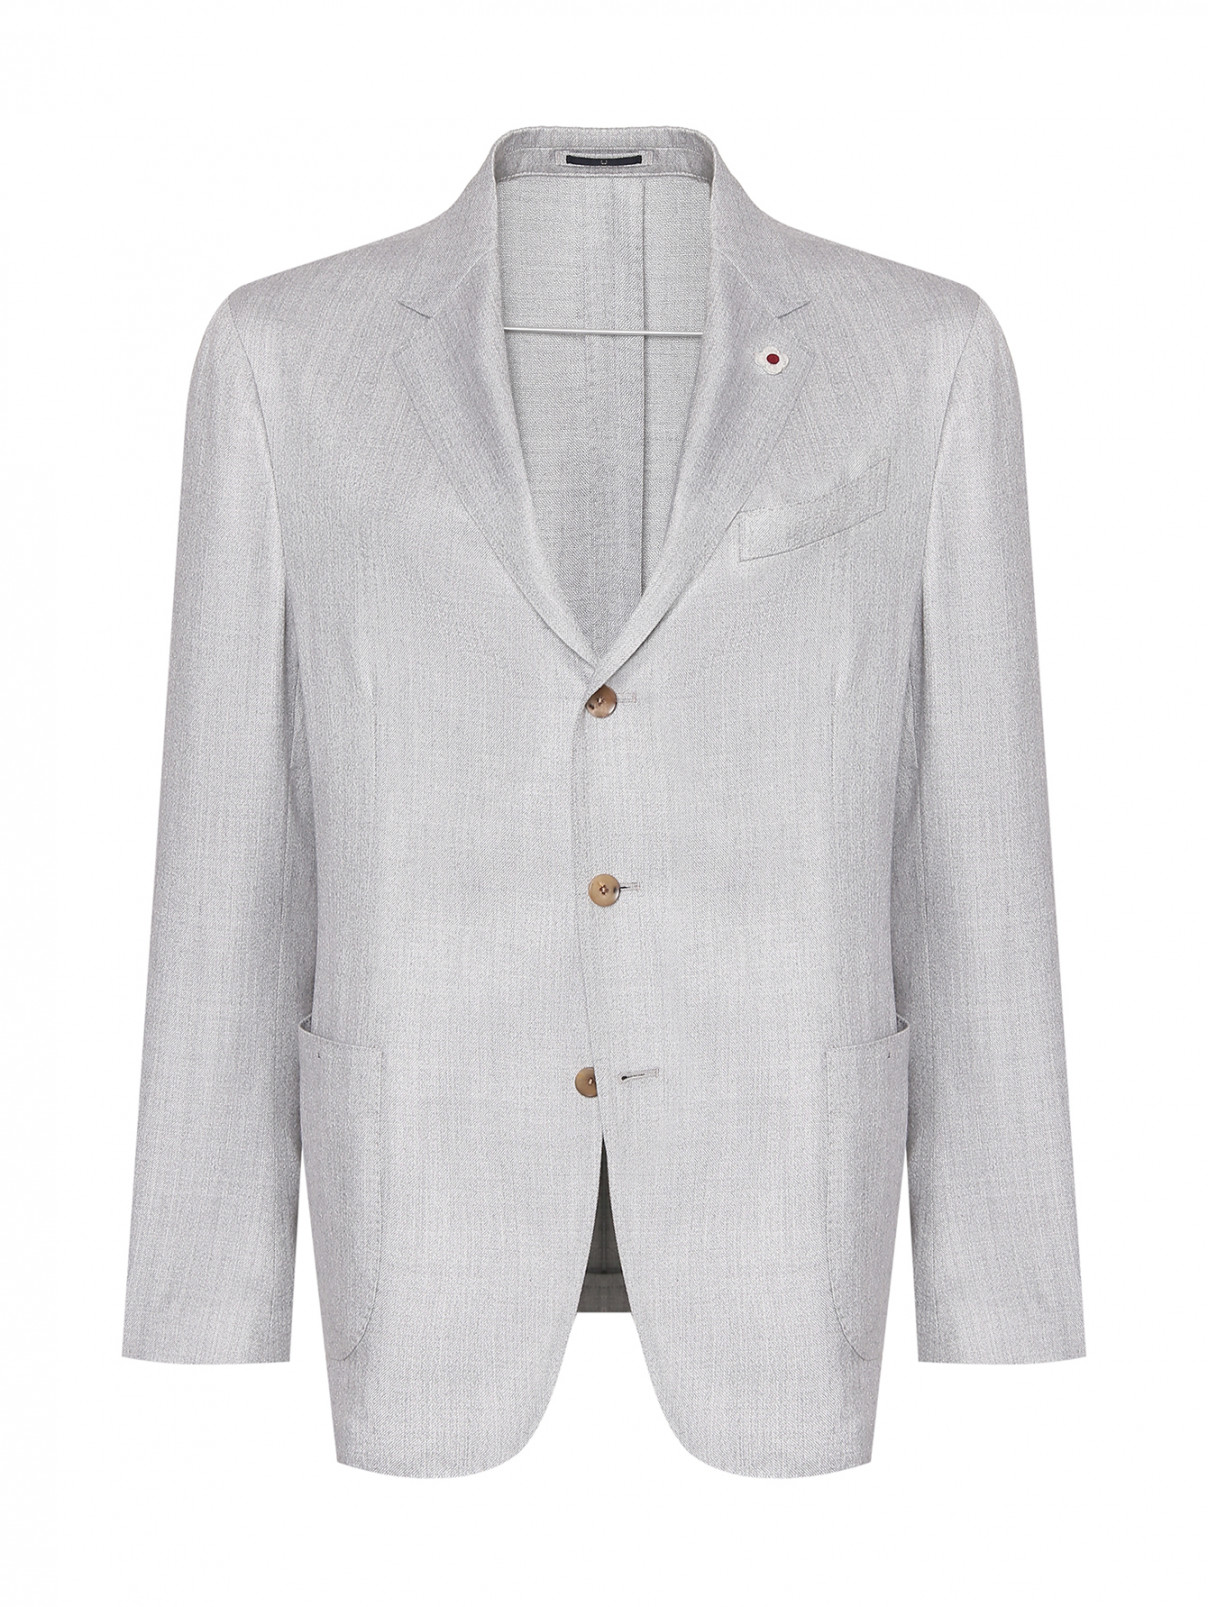 Пиджак из кашемира, шерсти и шелка LARDINI  –  Общий вид  – Цвет:  Серый